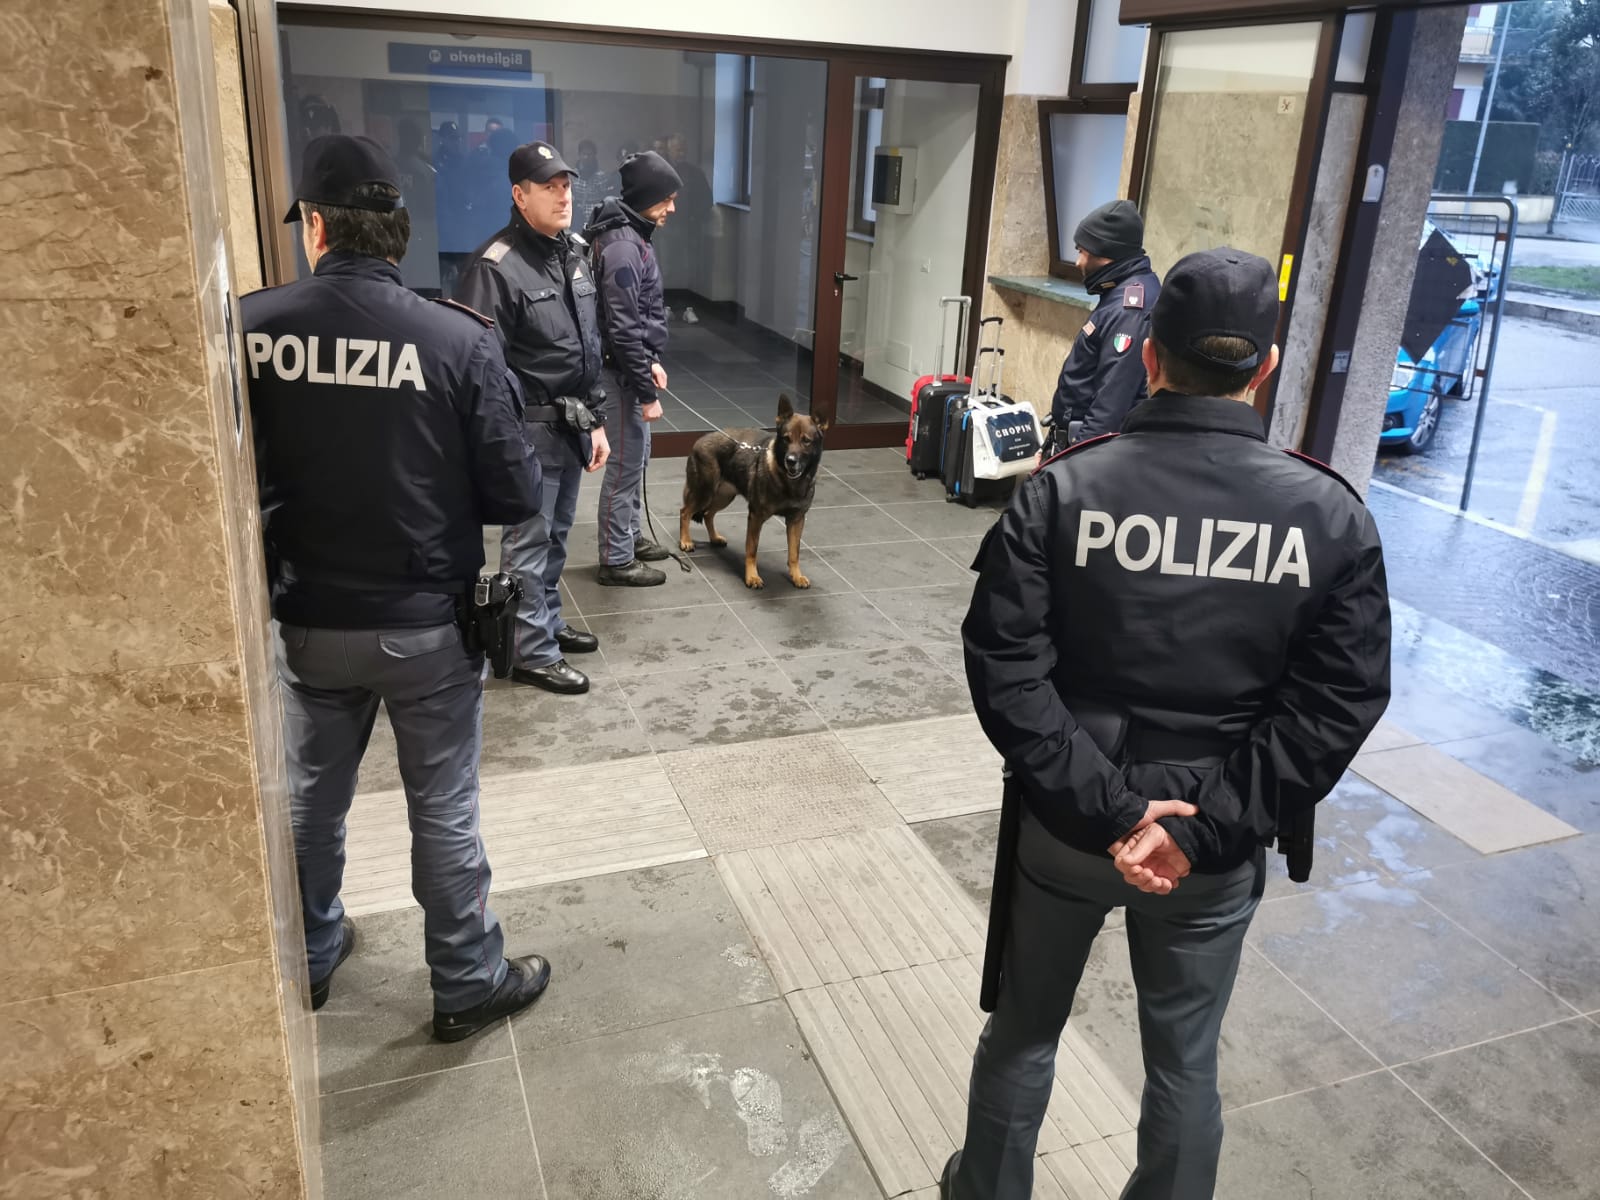 Polizia di Verona - Servizi straordinari di controllo del territorio alla  stazione ferroviaria di San Bonifacio - Il Giornale dei Veronesi